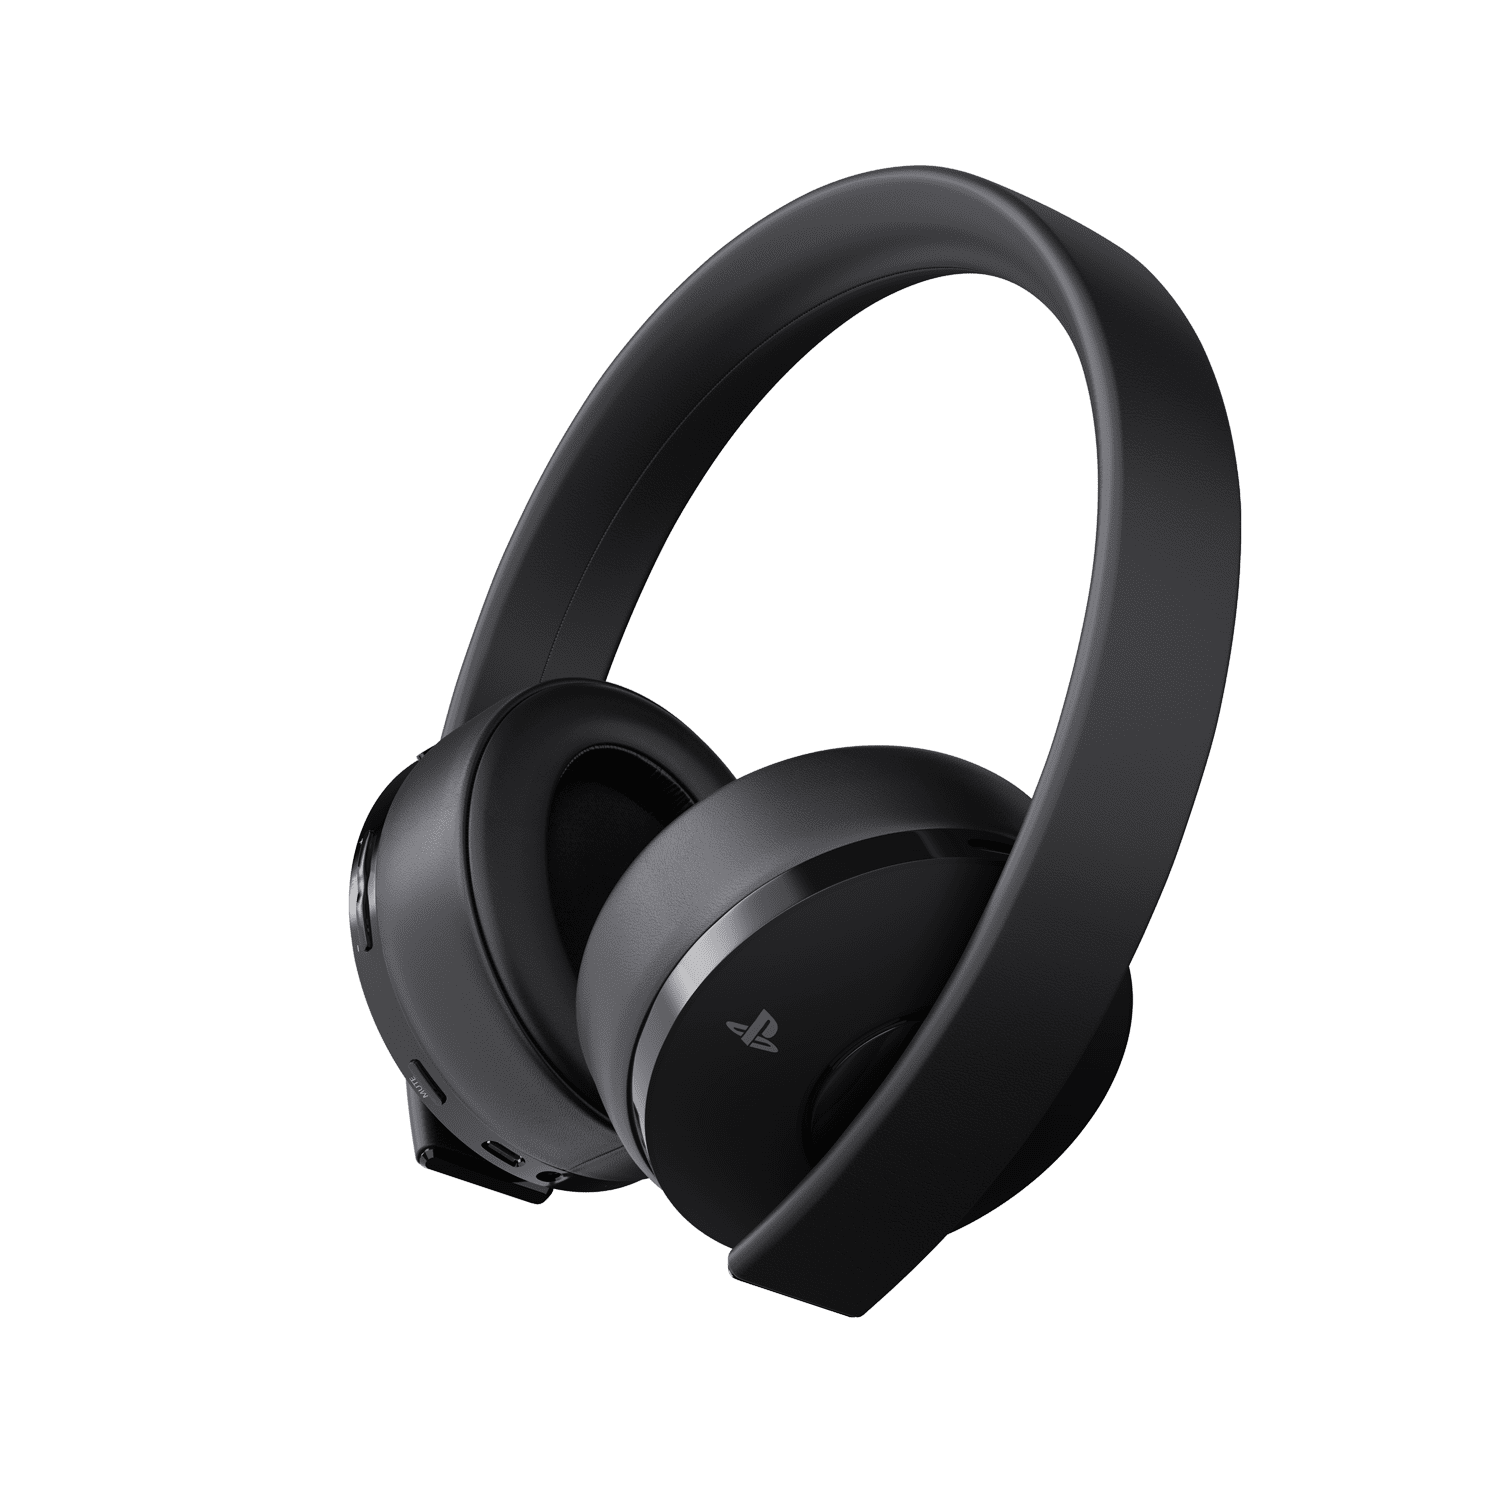 ps4 headset for fortnite